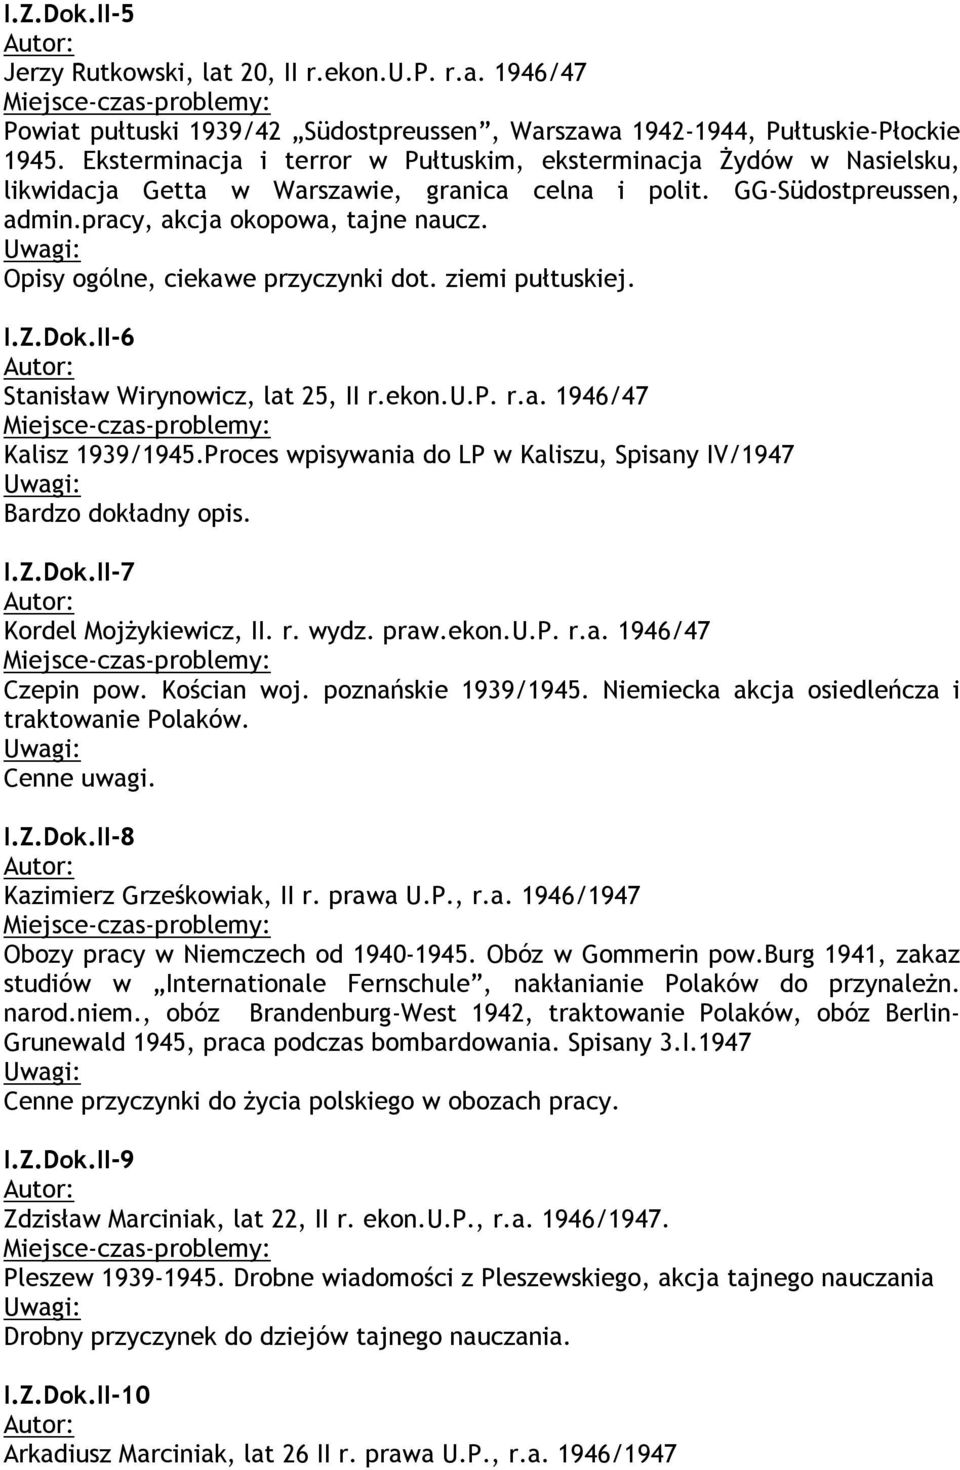 Opisy ogólne, ciekawe przyczynki dot. ziemi pułtuskiej. I.Z.Dok.II-6 Stanisław Wirynowicz, lat 25, II r.ekon.u.p. r.a. 1946/47 Kalisz 1939/1945.